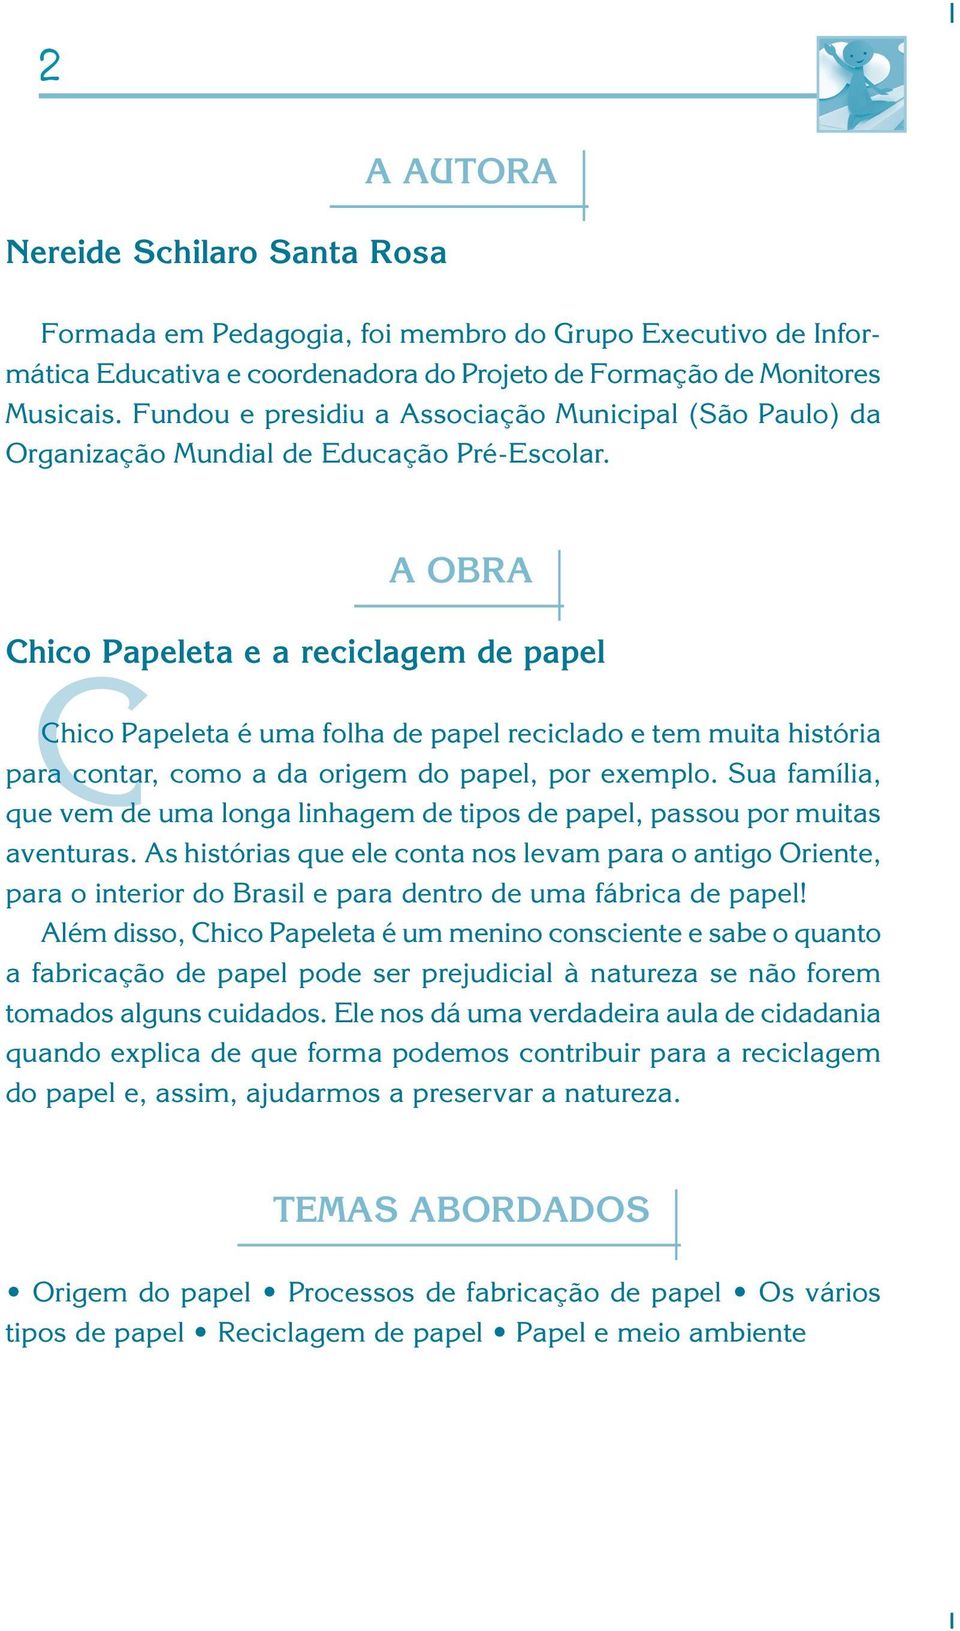 A OBRA Chico Papeleta e a reciclagem de papel C Chico Papeleta é uma folha de papel reciclado e tem muita história para contar, como a da origem do papel, por exemplo.